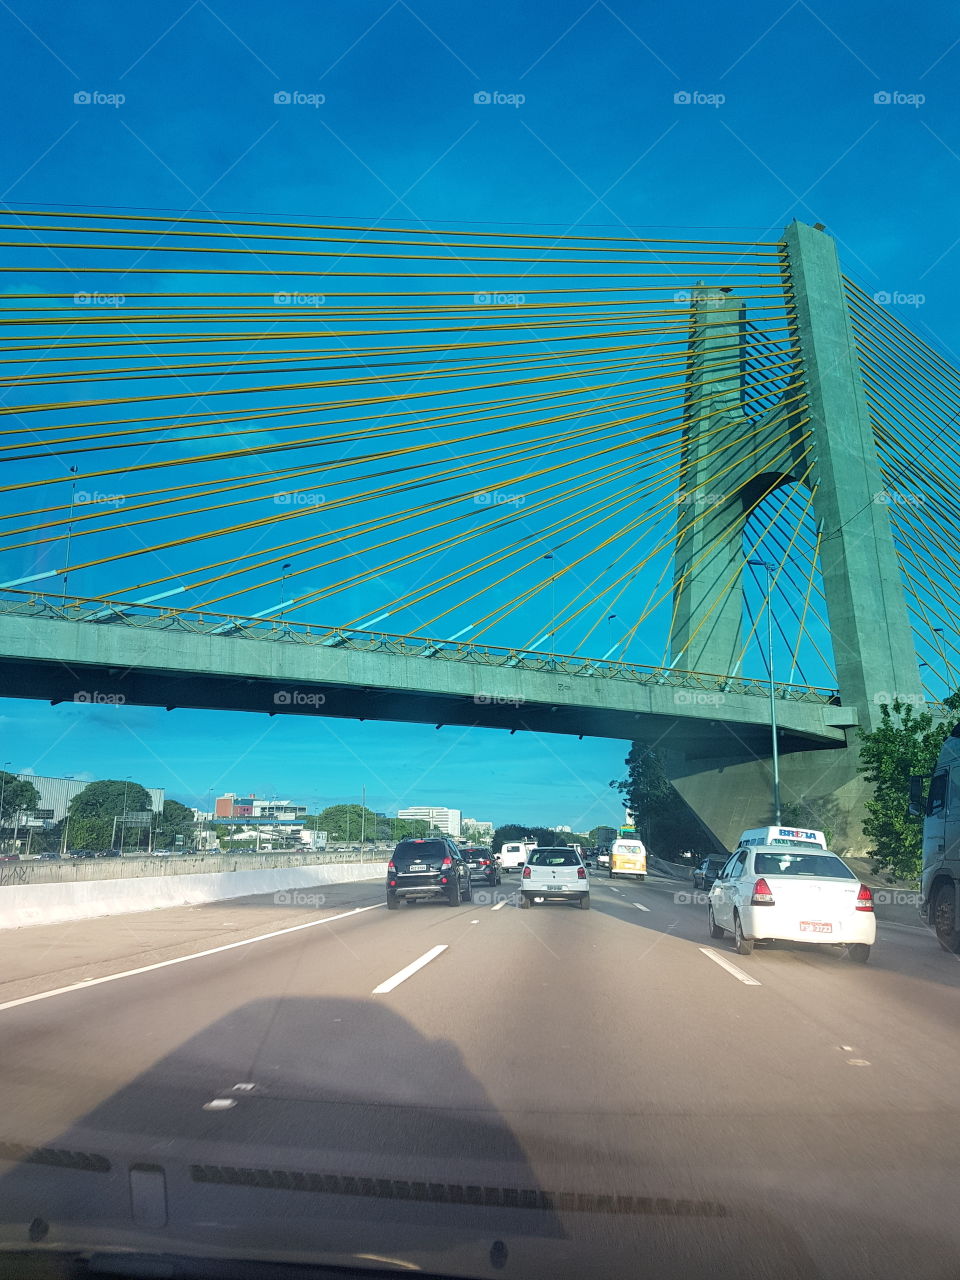 São Paulo bridge